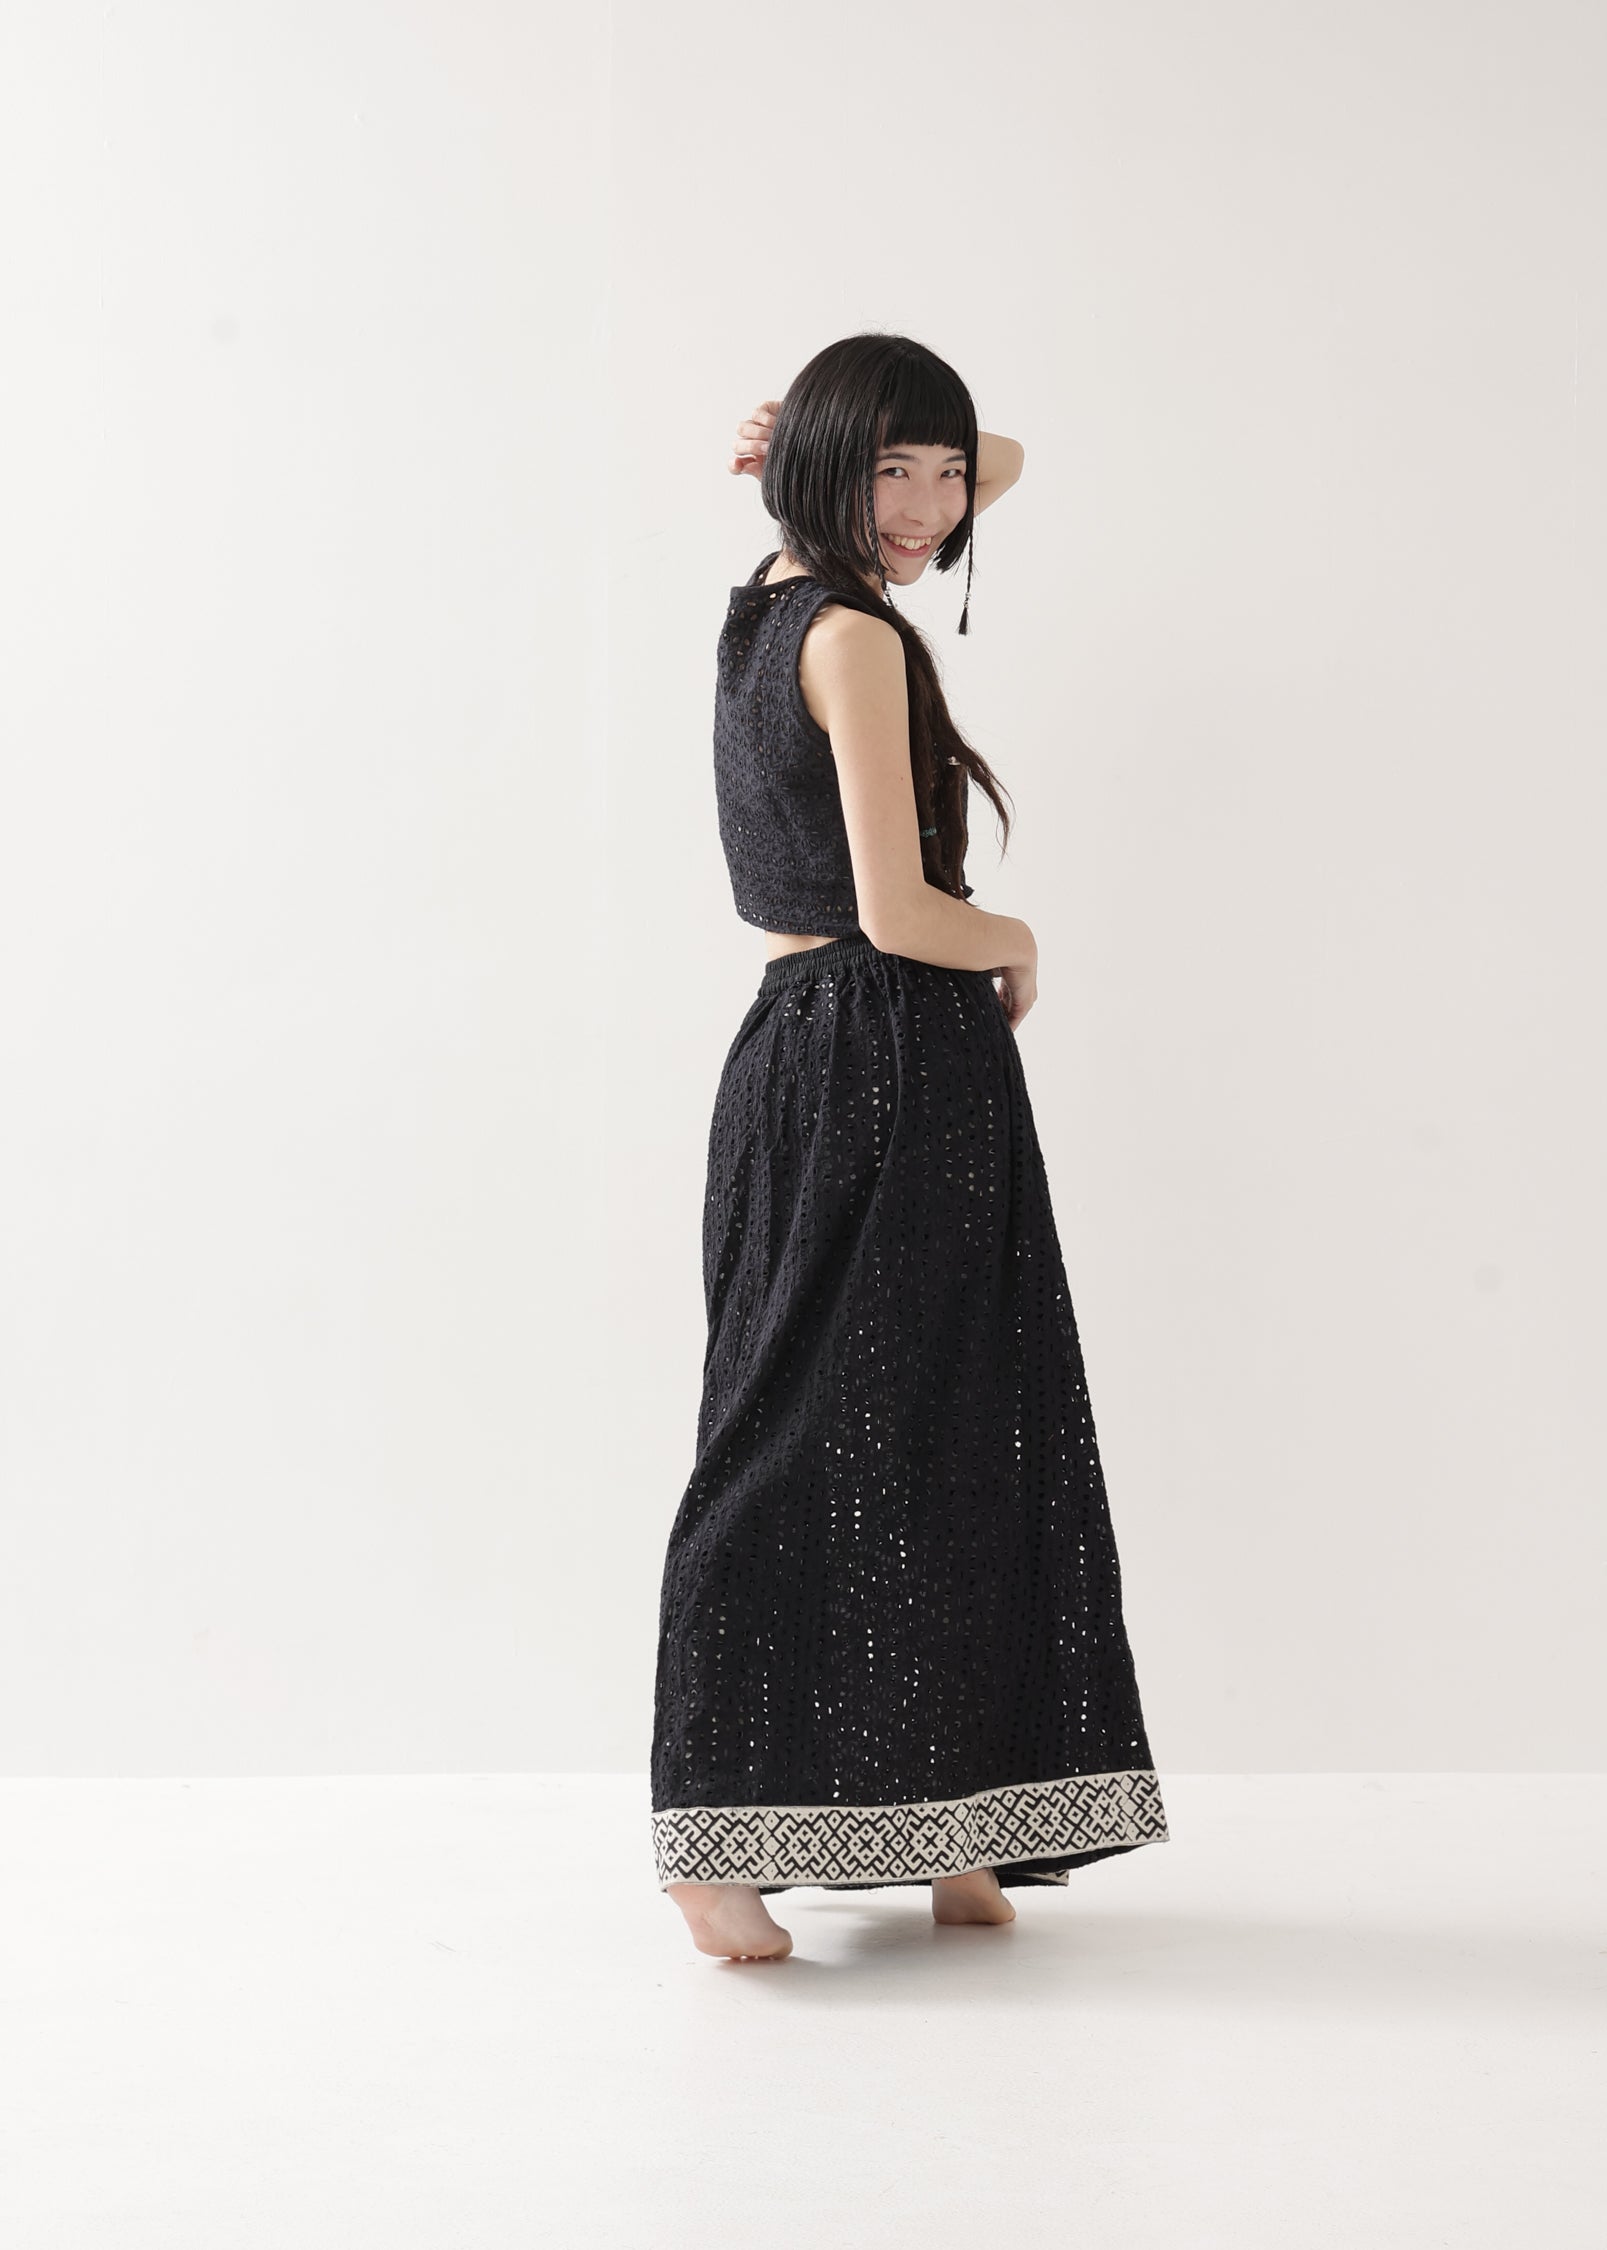 [Dragon Tail] ハコバコットン透かし編みFRACTALデザインスカート